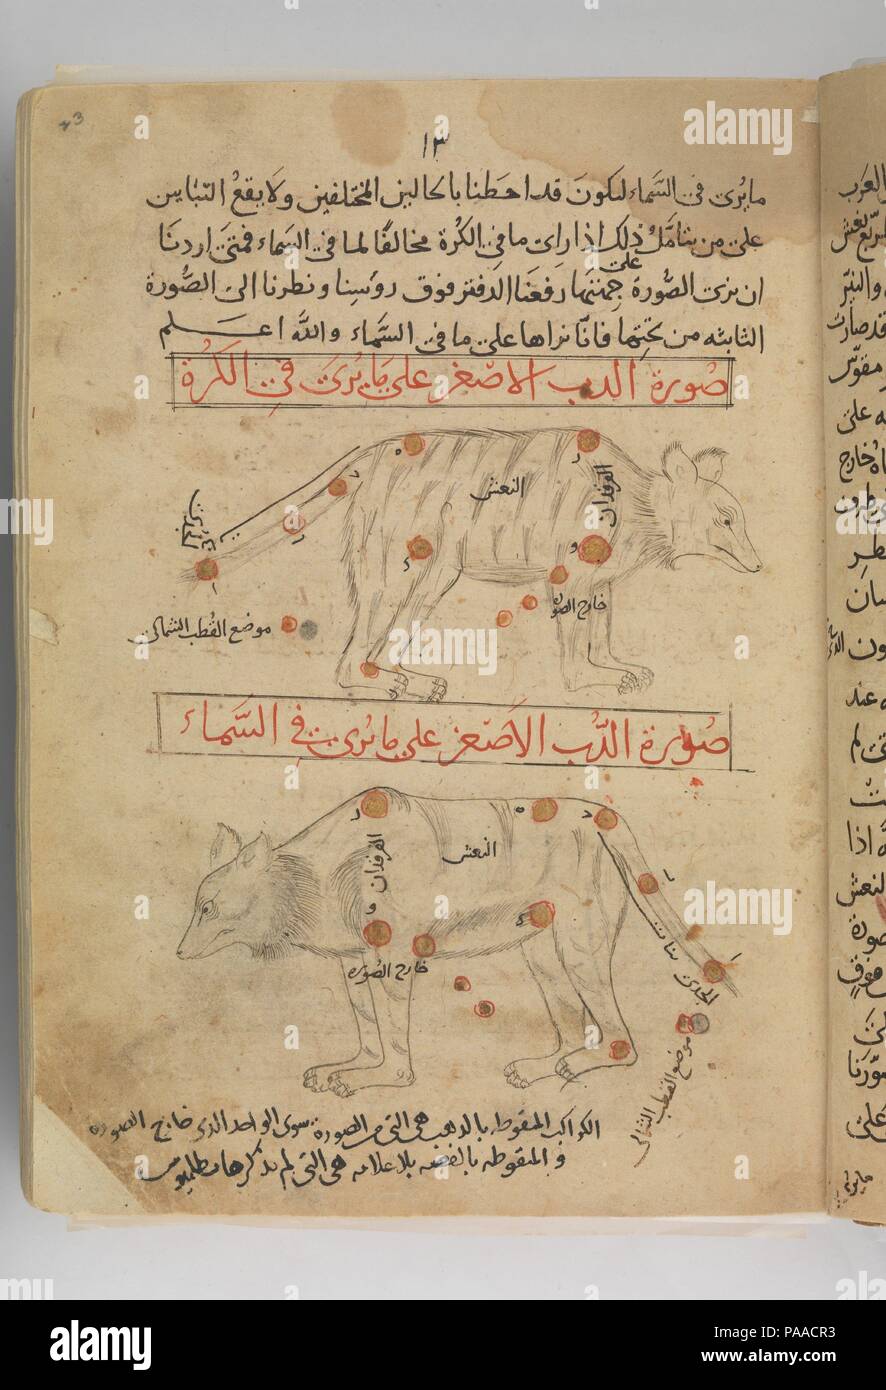 Kitab al-kawakib suwar al-thabita (livre des images des étoiles fixes) d'al-Sufi. Auteur : 'Abd al-Rahman al-Sufi (iranienne, Rey 903-986 Shiraz). Dimensions : H. 10 3/16 po. (25,8 cm) W. 7 1/8 in. (18,1 cm). Date : fin du xve siècle. Cet ouvrage, fondé sur l'Almageste de l'astronome grec Ptolémée, concerne la quarante-huit constellations connu comme les étoiles fixes, qui, selon la conception médiévale de l'univers habité, le huitième des neuf sphères entourant la terre. Les constellations apparaissent chacun deux fois en image miroir, illustré comme observé à partir de la terre et du ciel. Mu Banque D'Images